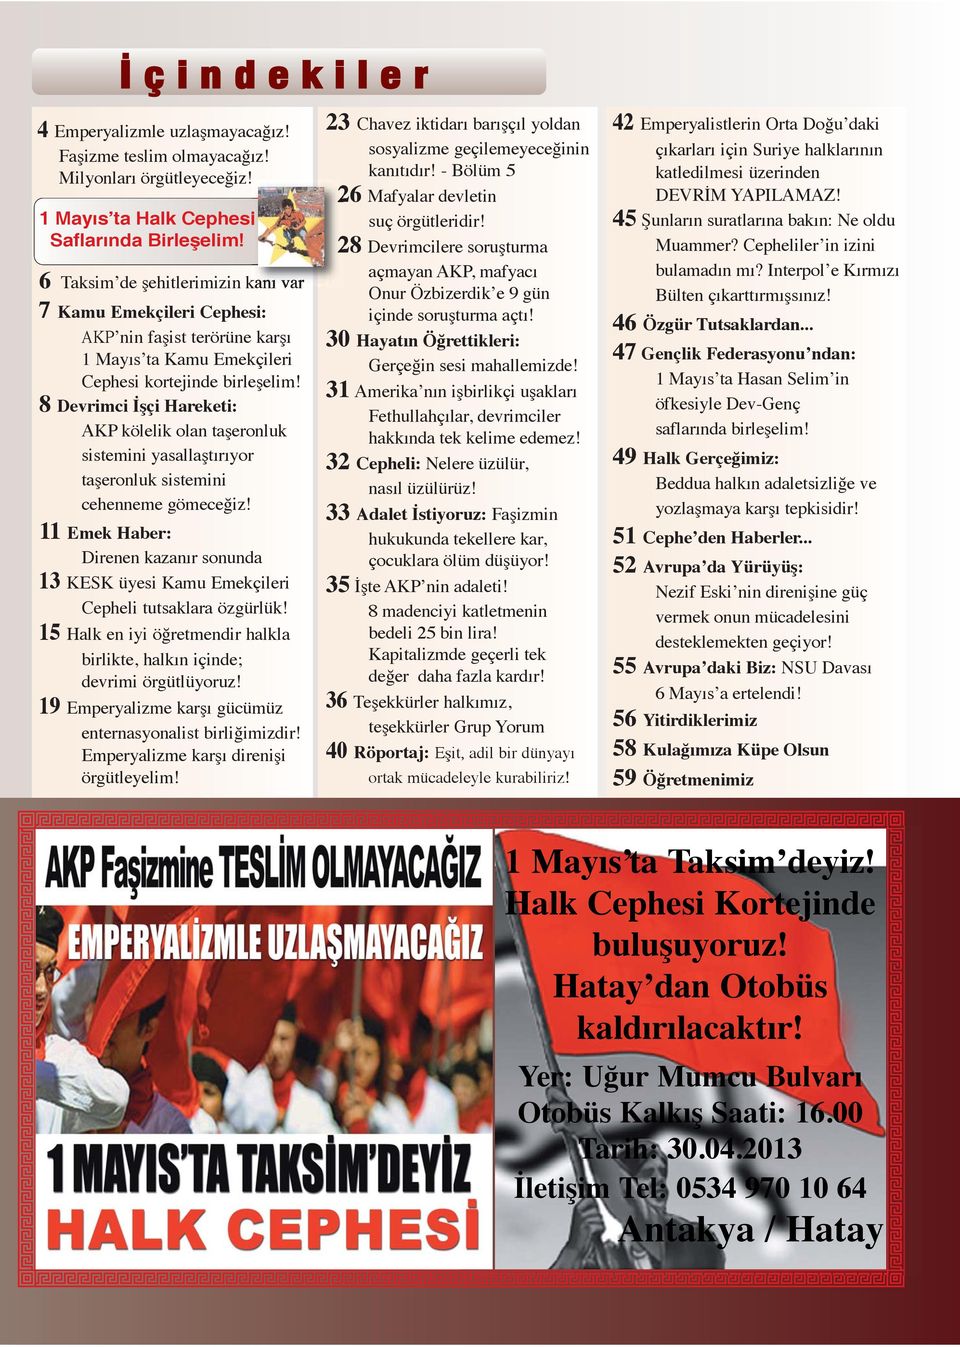 8 Devrimci İşçi Hareketi: AKP kölelik olan taşeronluk sistemini yasallaştırıyor taşeronluk sistemini cehenneme gömeceğiz!